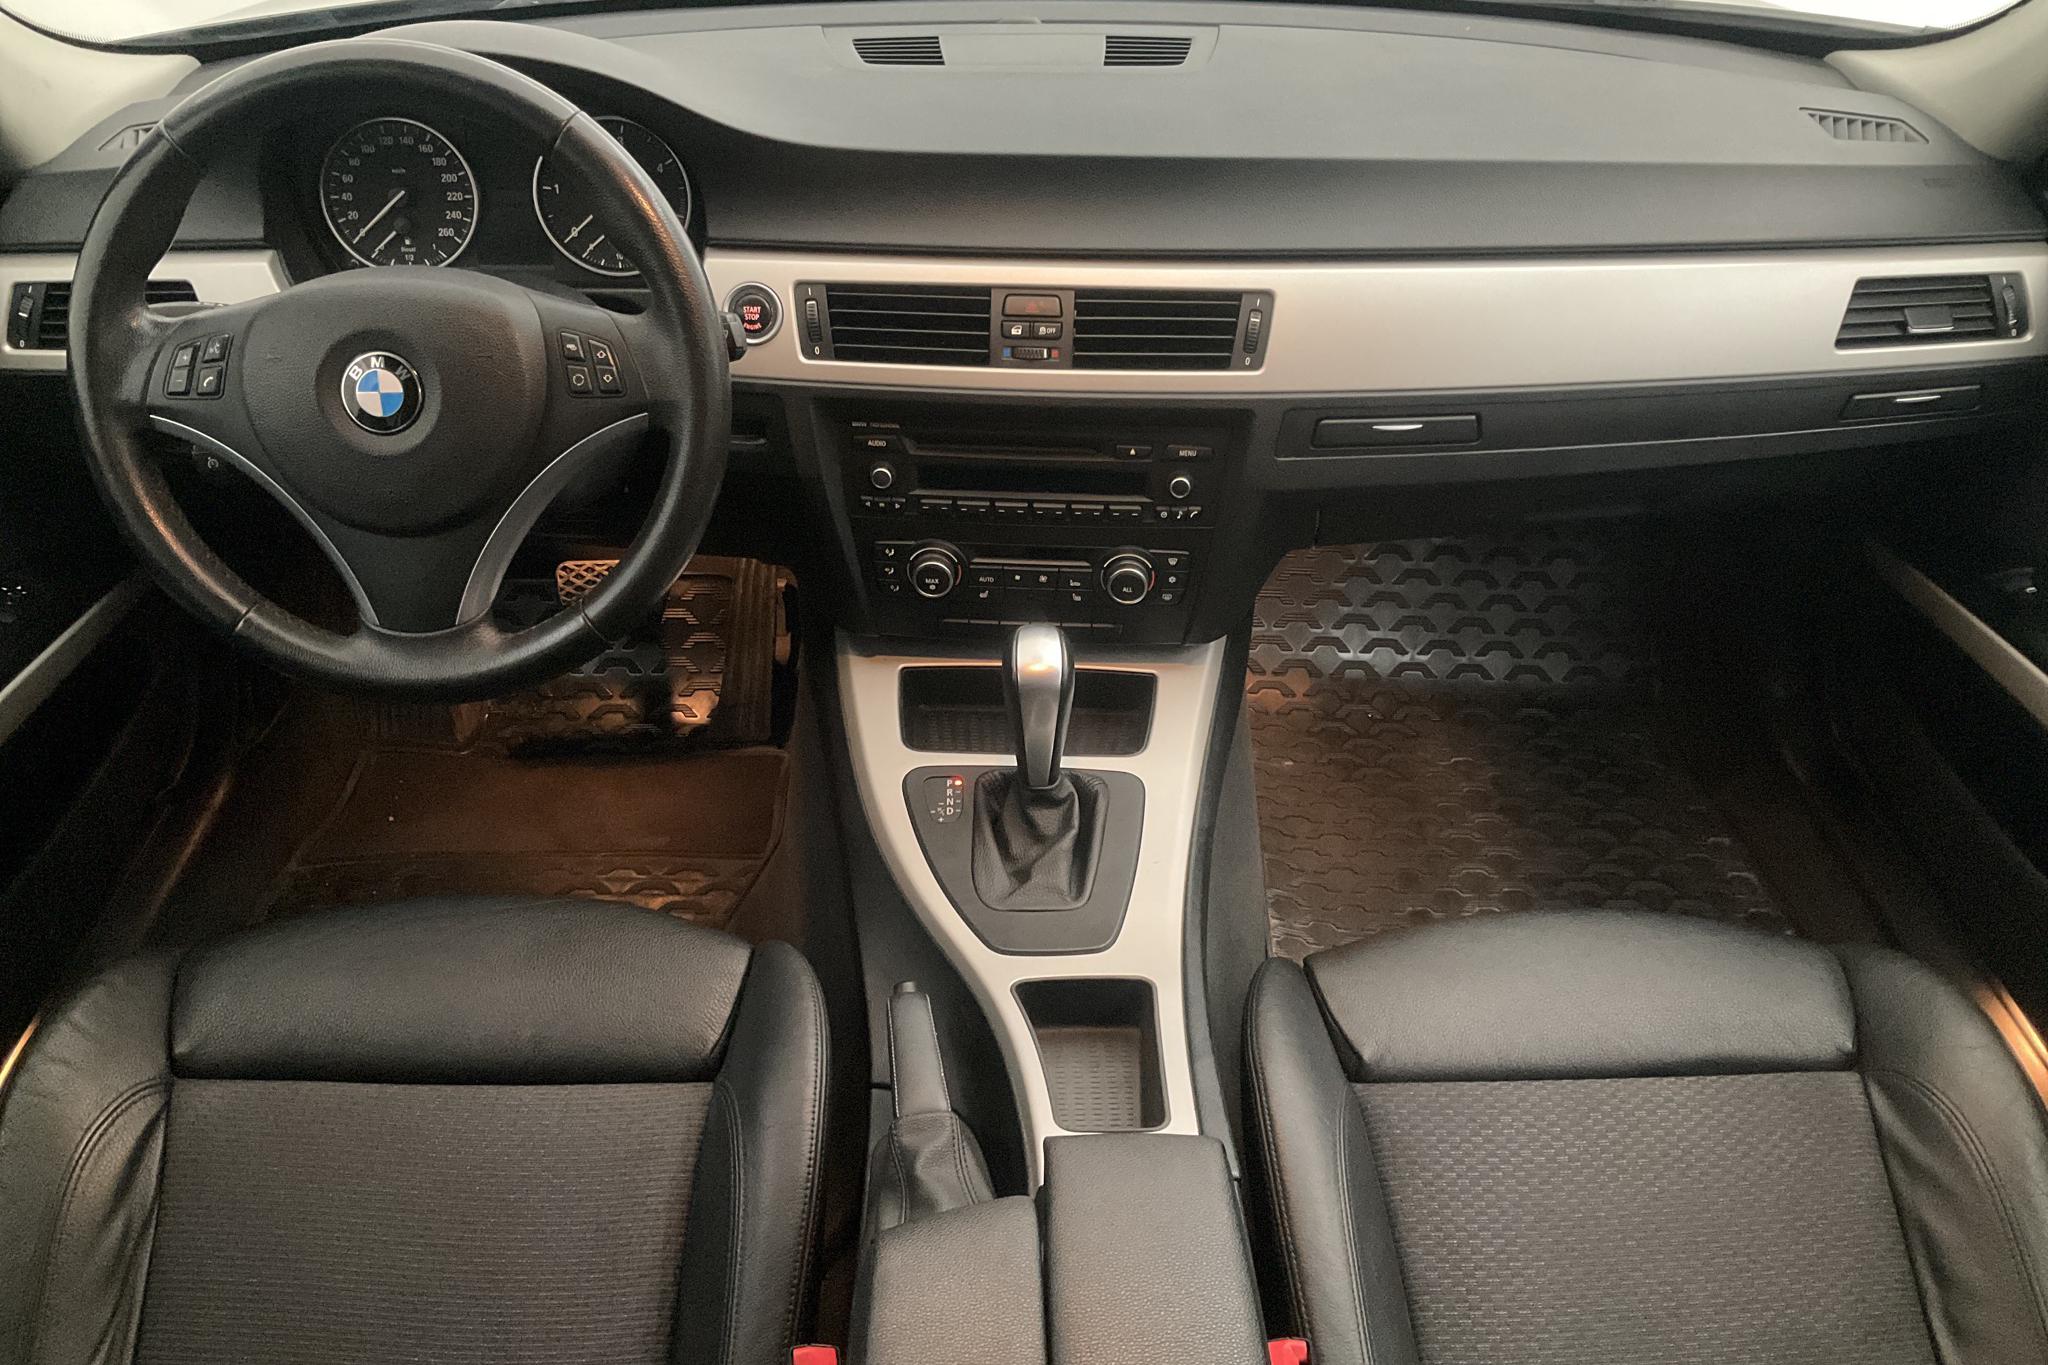 BMW 320d xDrive Touring, E91 (184hk) - 220 710 km - Automatic - black - 2012